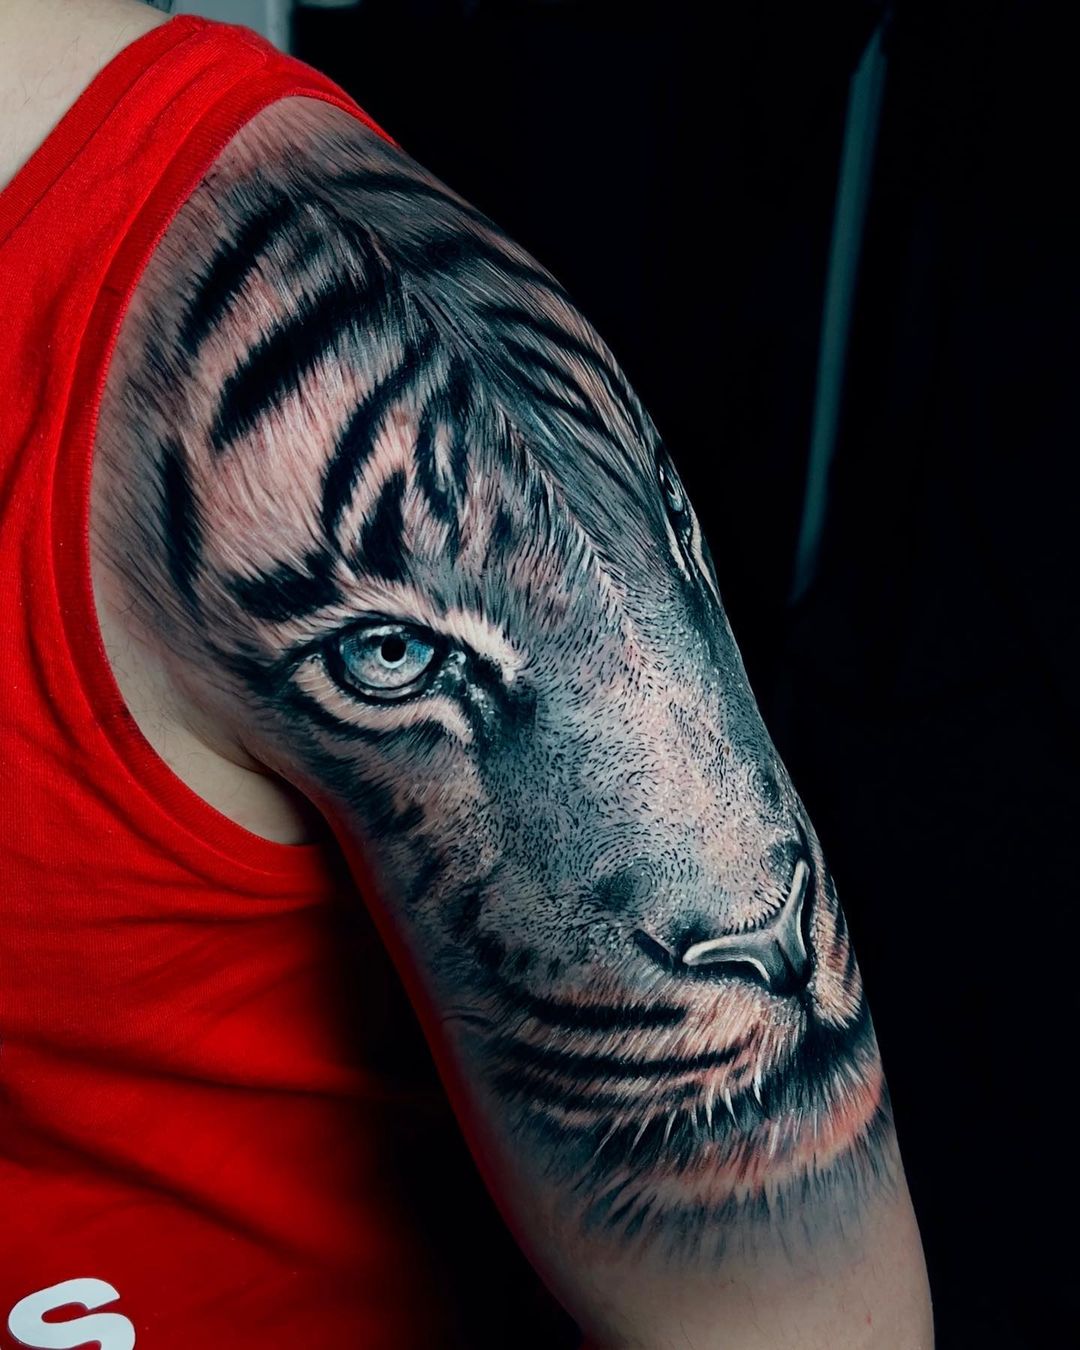 Tatuaje realista de tigre en brazo